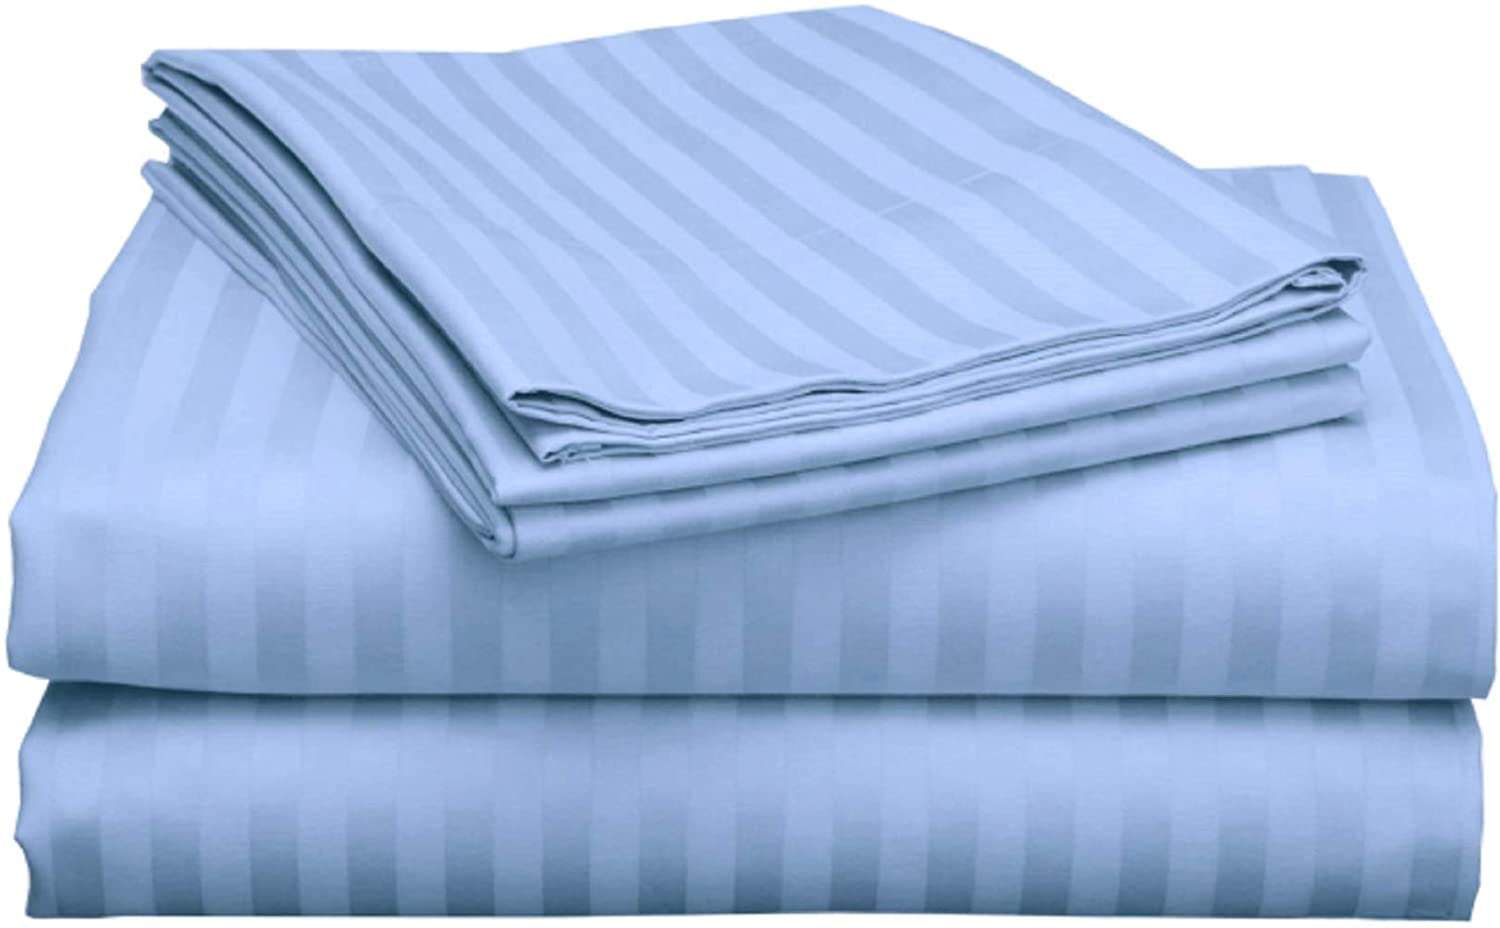 Top Split King Sheets Sets for Adjustable beds, Half Split King Sheet Sets  for Adjustable beds 21